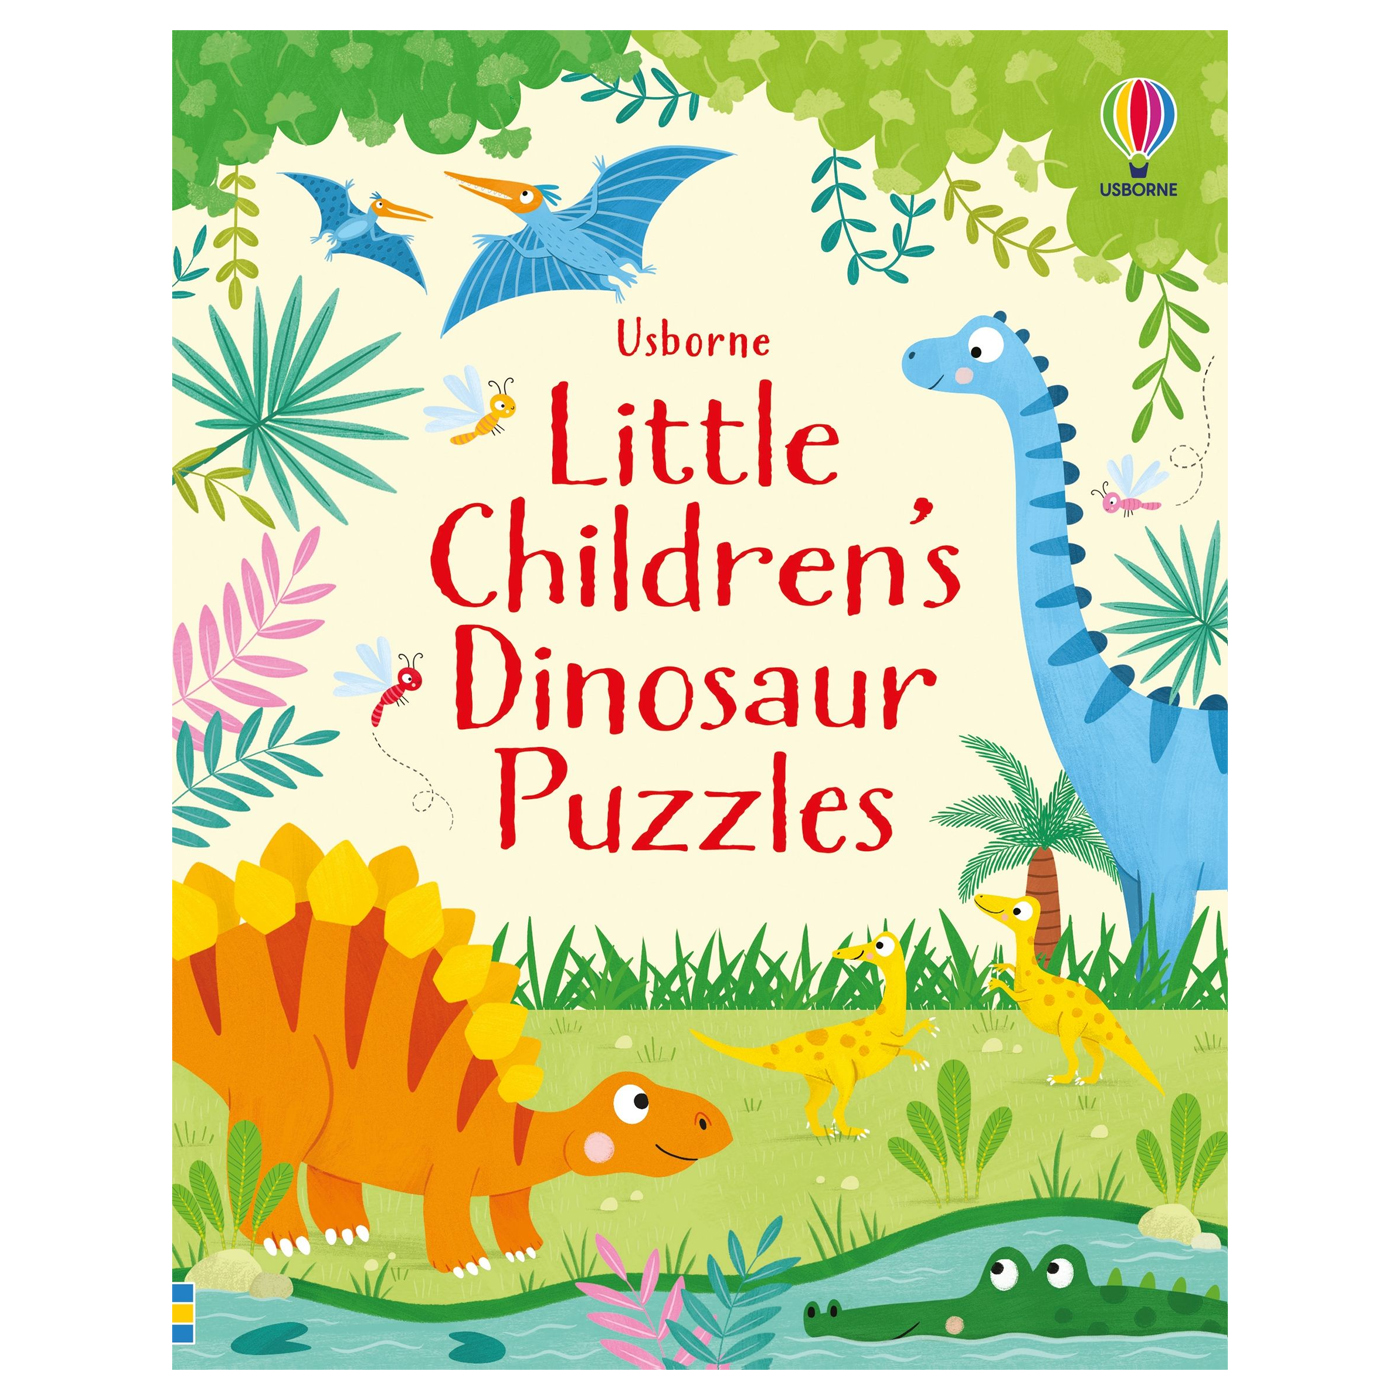  Little Children's Dinosaur Puzzles